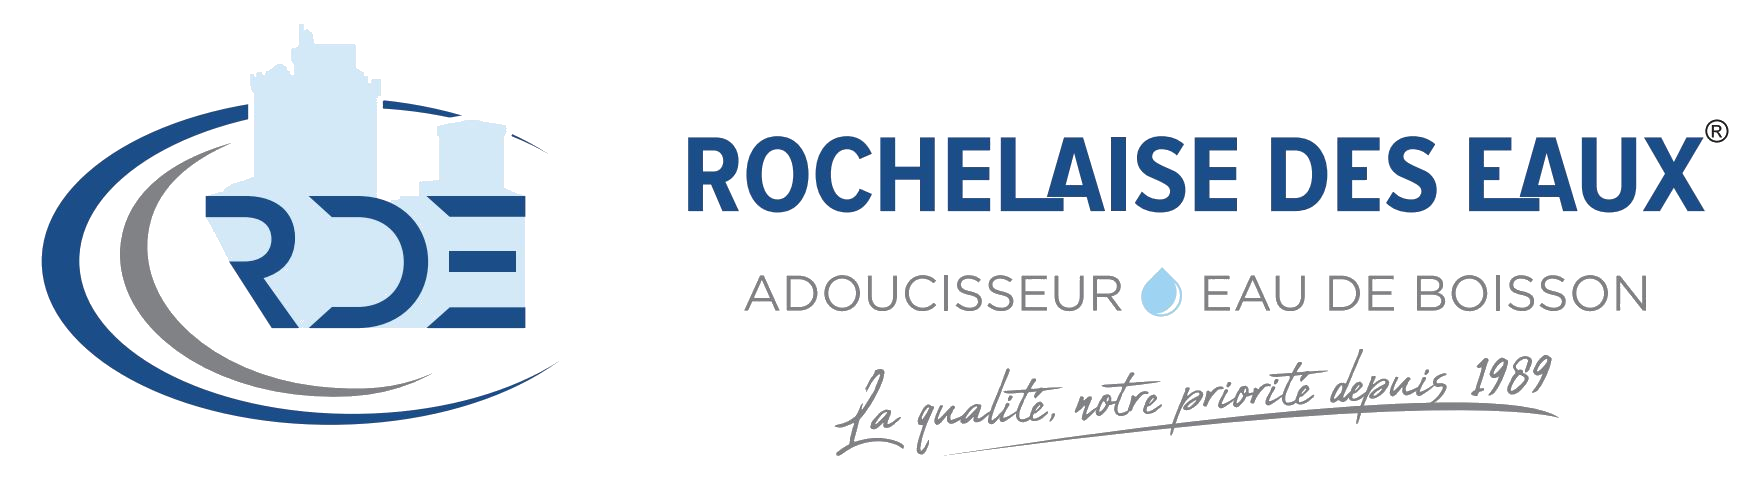 Adoucisseur d'eau Rochefort - Réparation d'adoucisseur d'eau toute marque Luçon